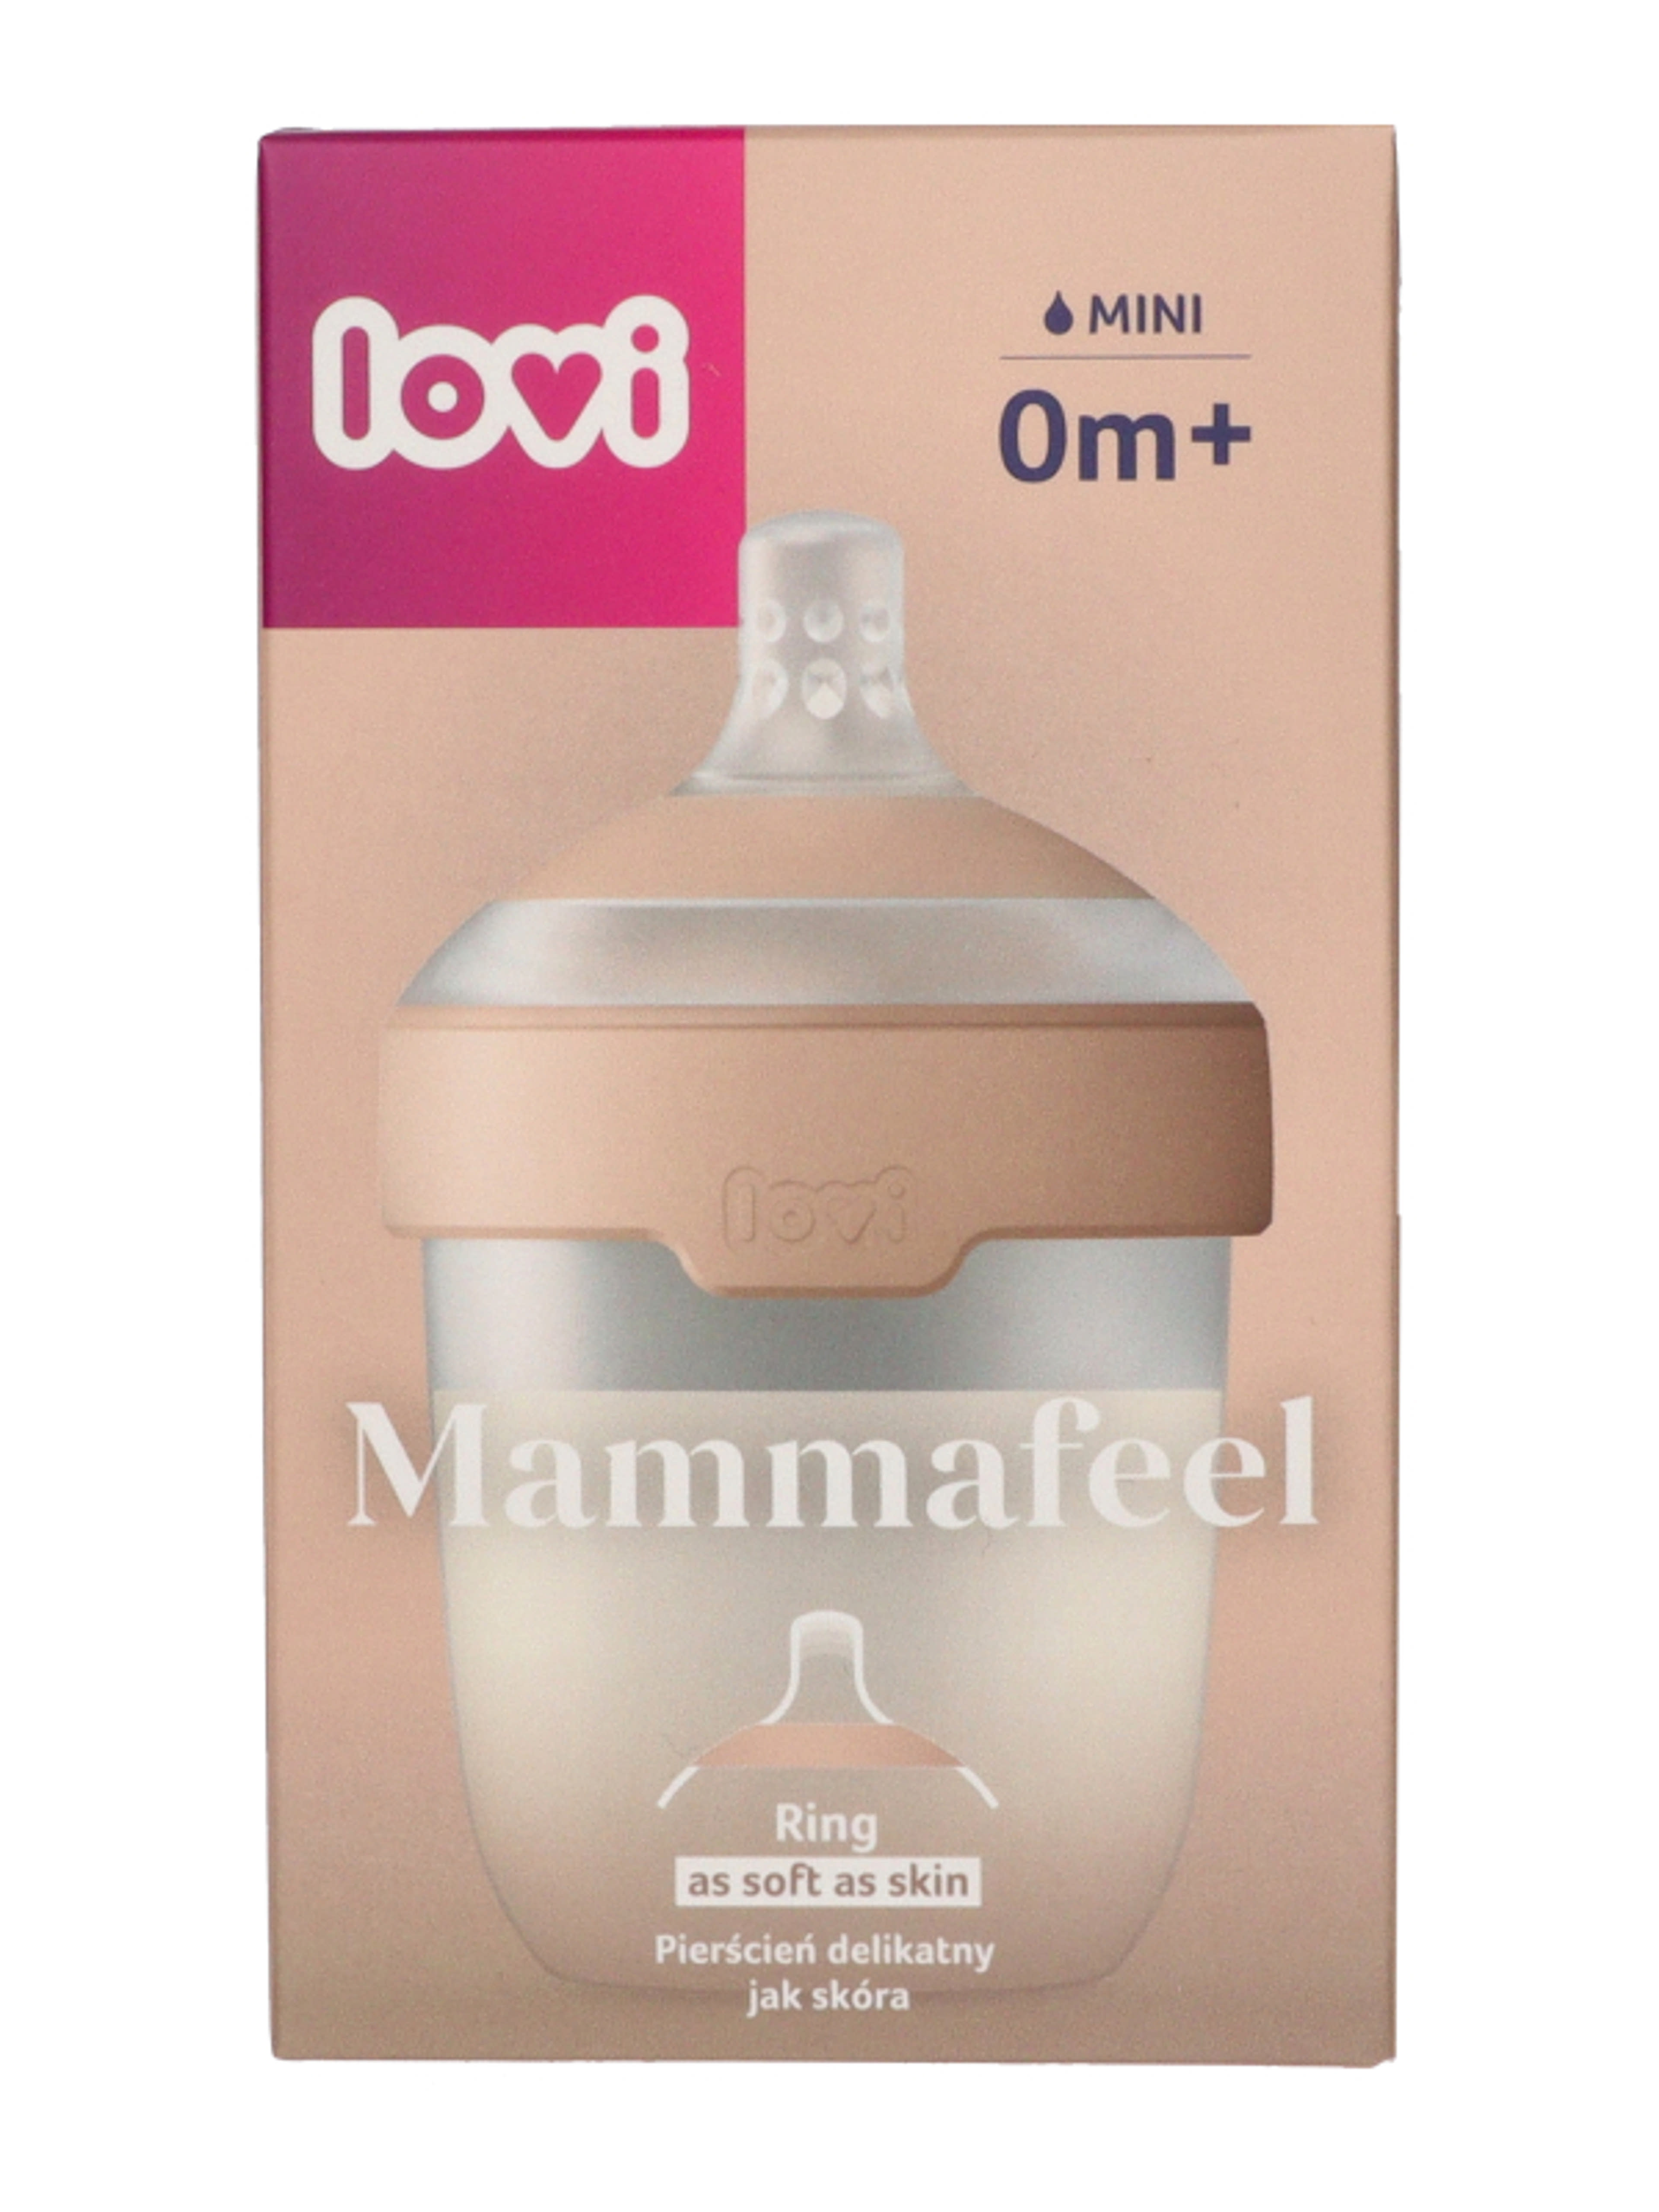 Lovi Mammafeel cumisüveg újszülött kortól 150 ml - 1 db